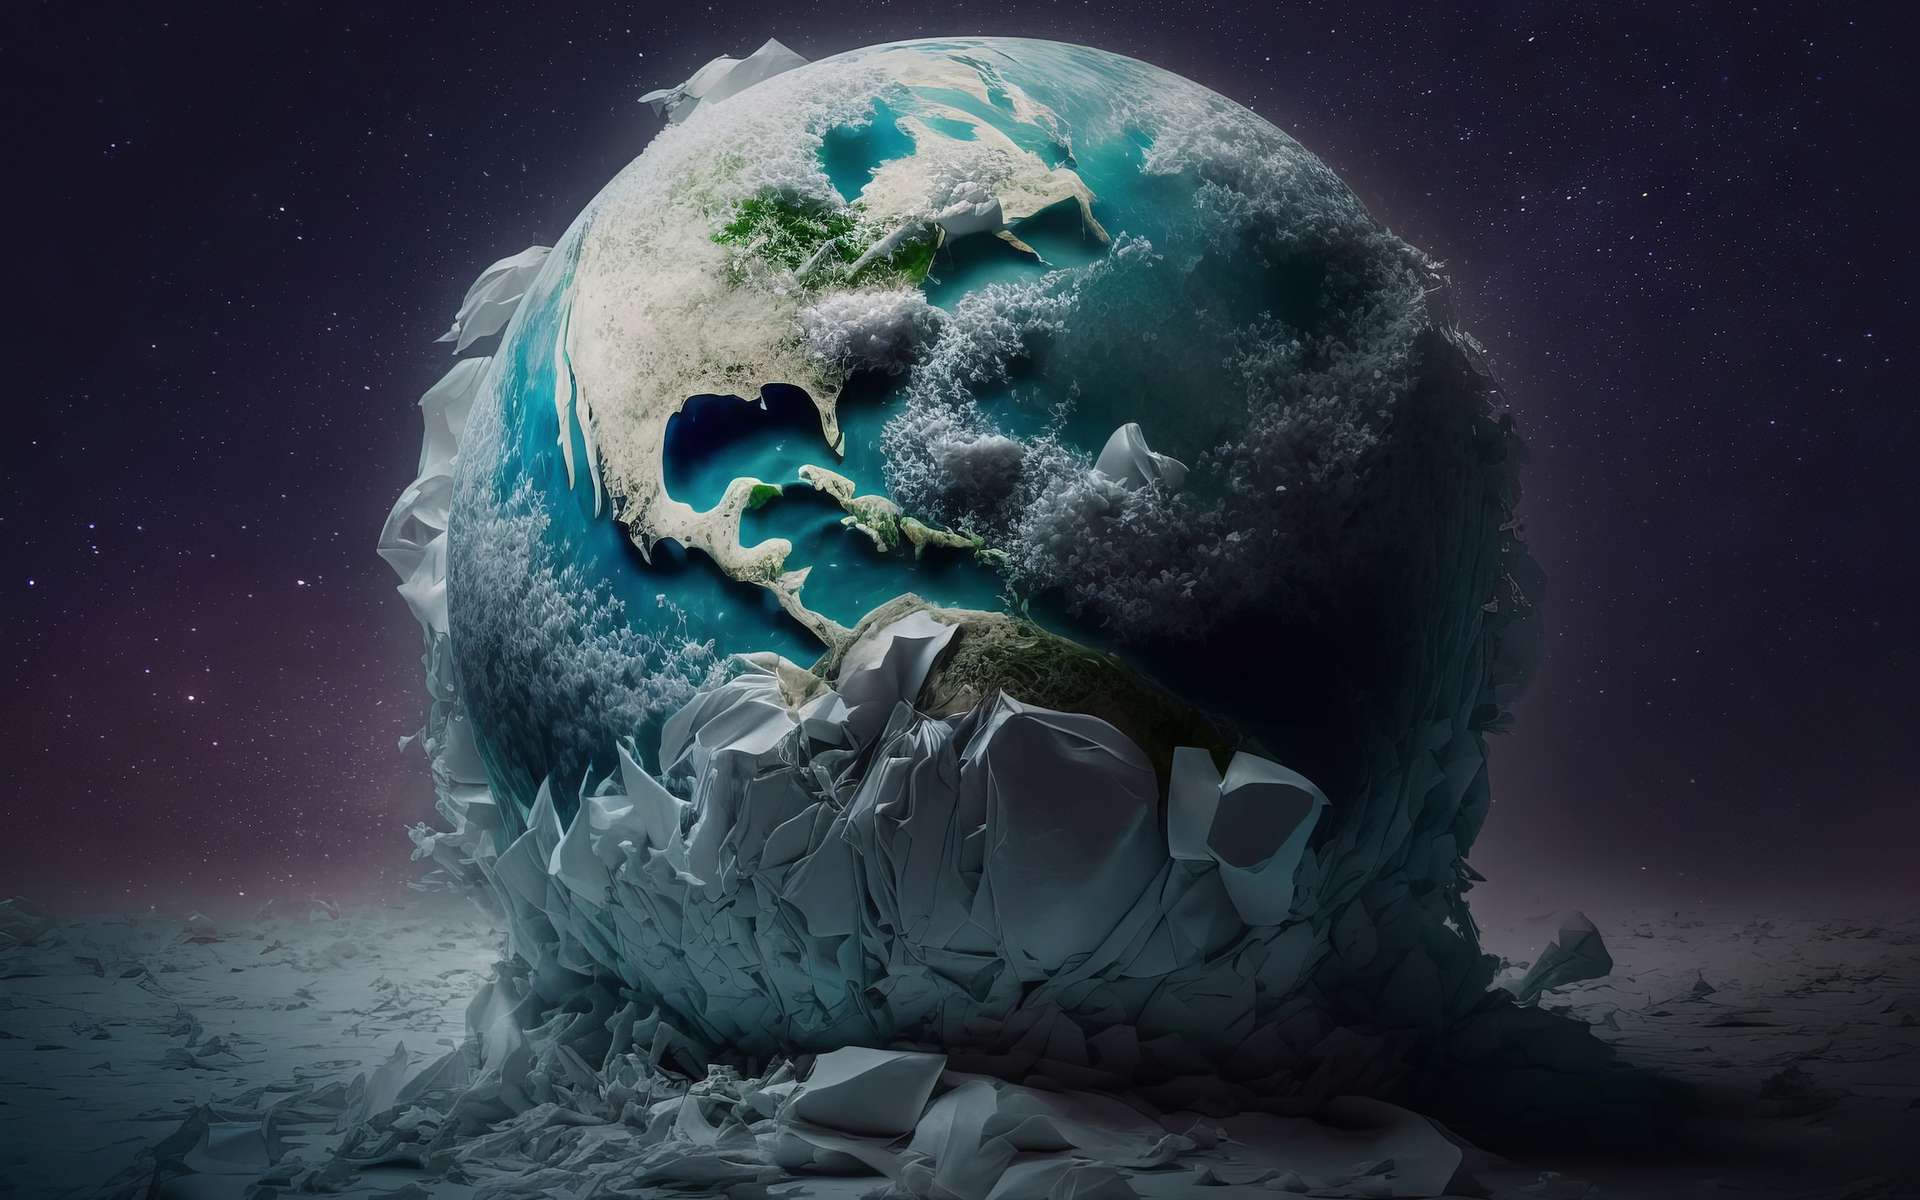 L'énigme de la Terre boule de neige suivie d'un tournant majeur dans son histoire du vivant